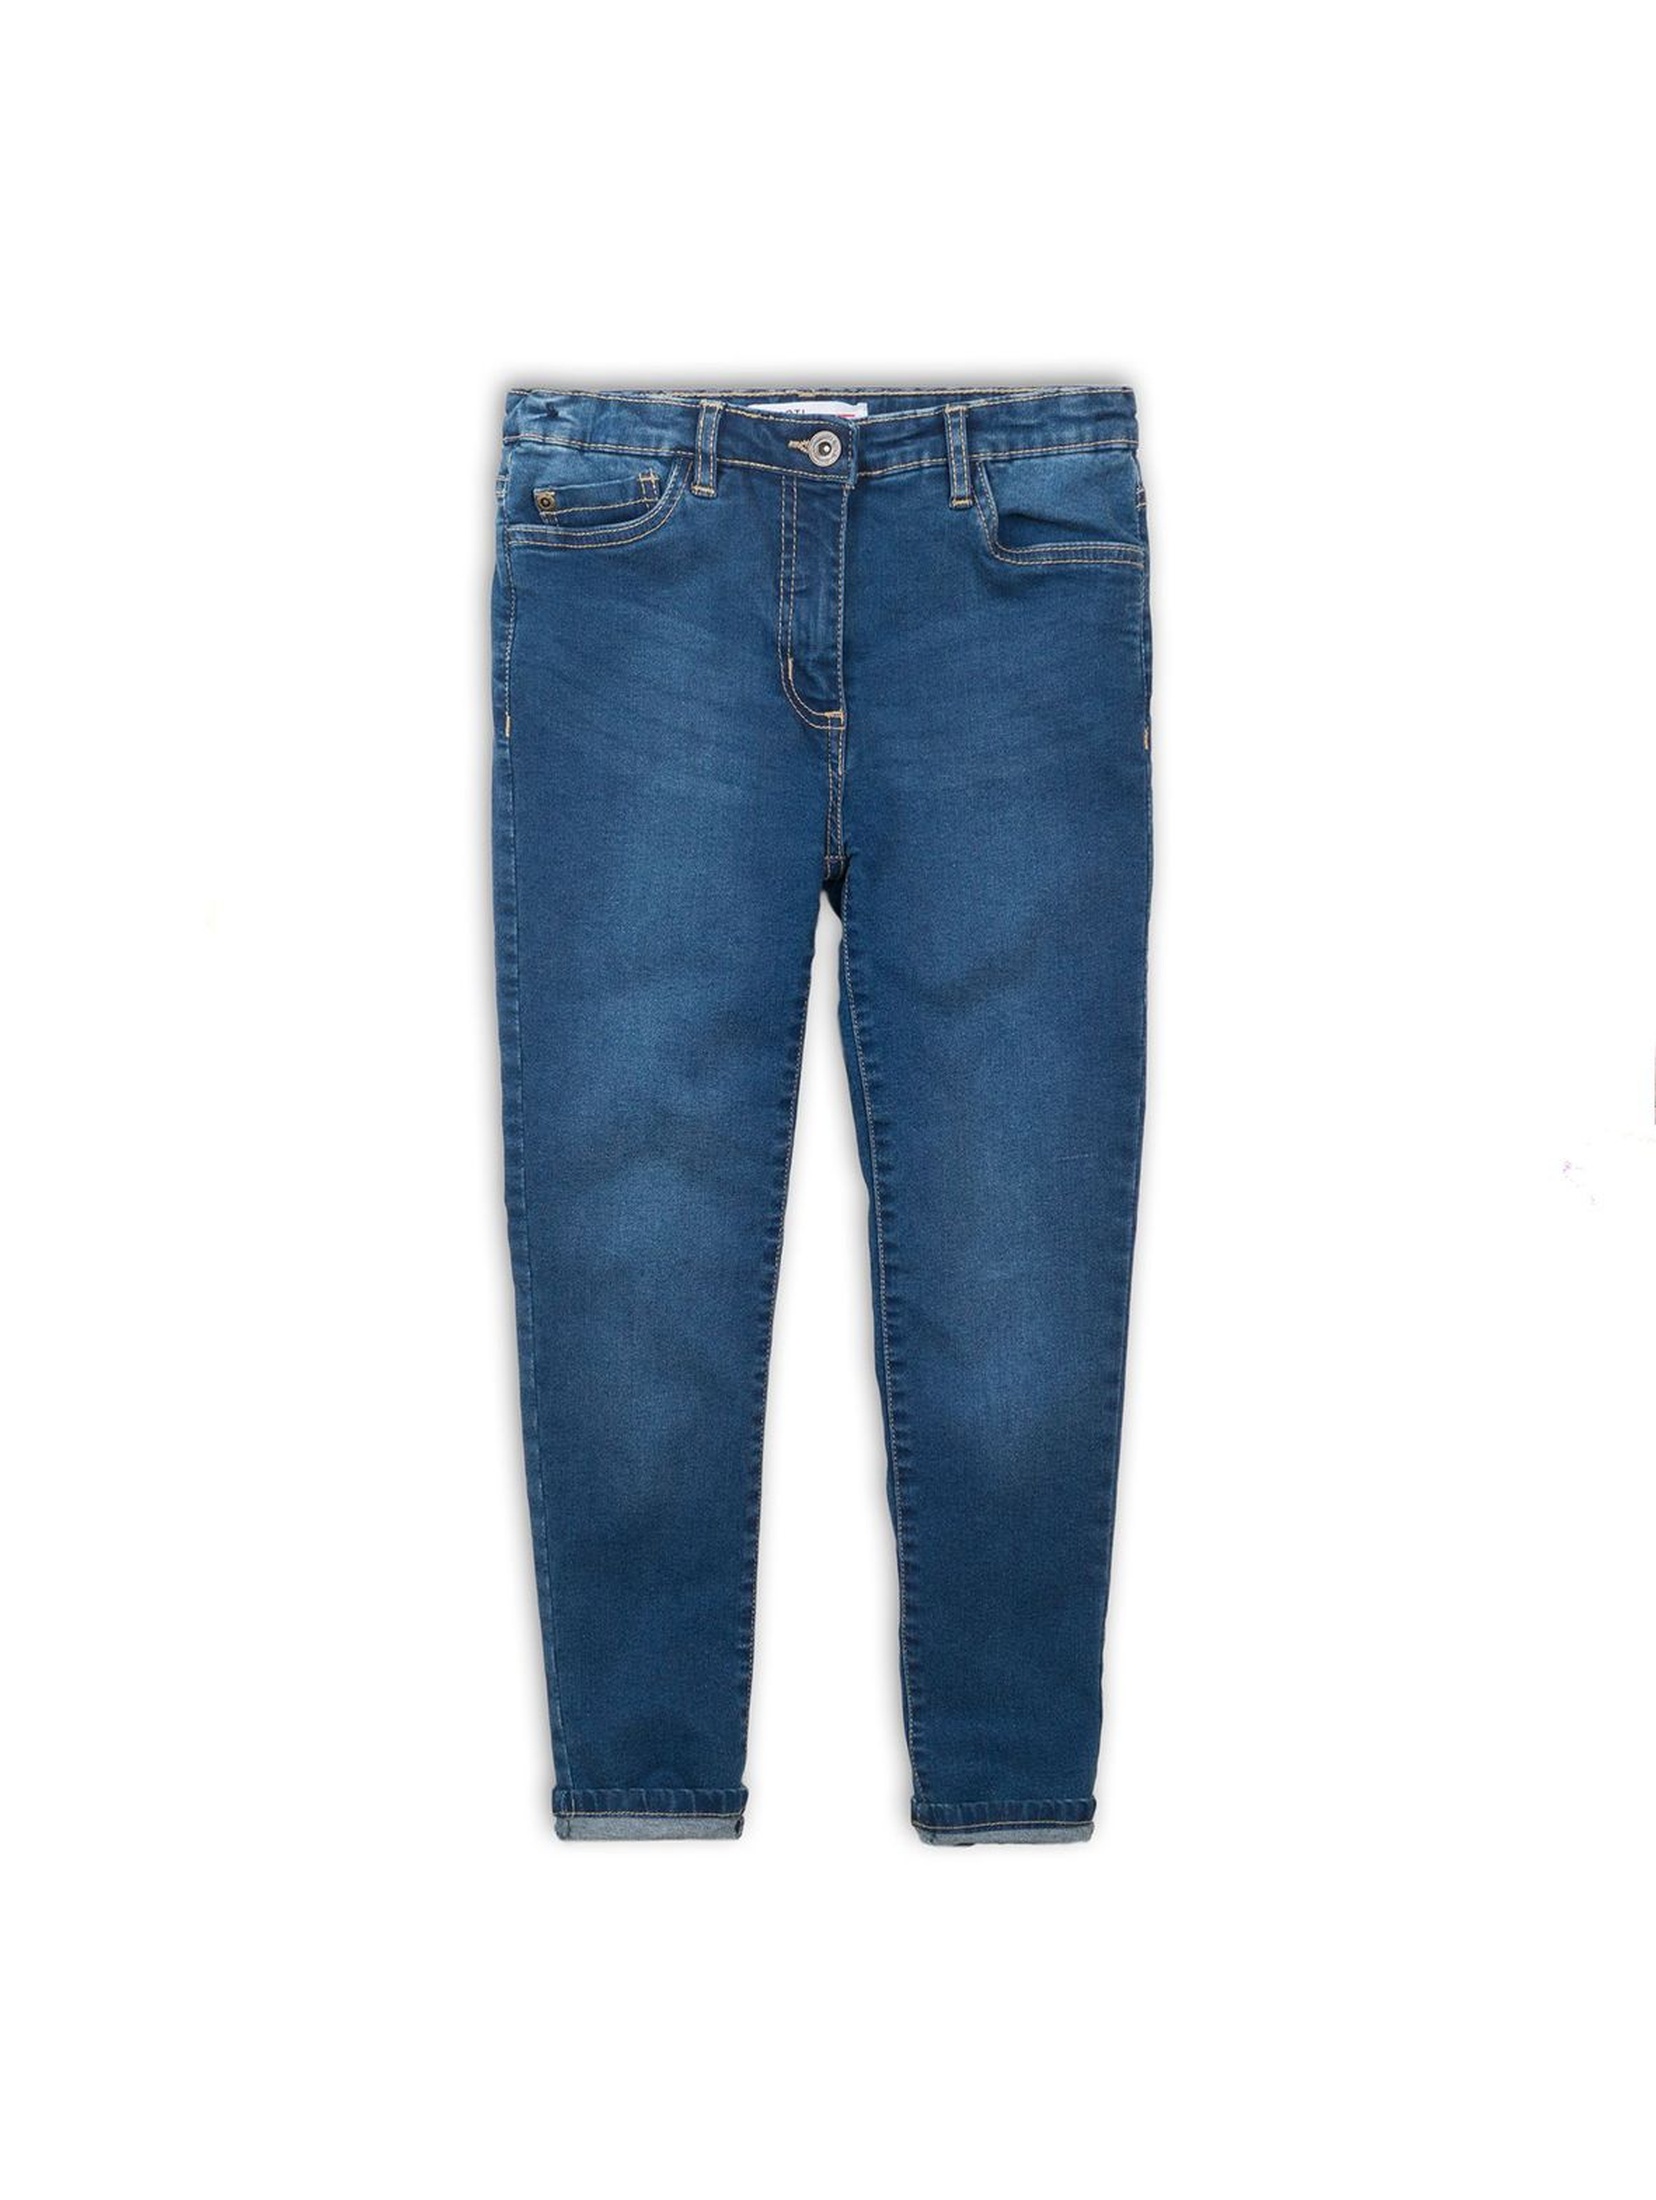 Niebieskie spodnie dziewczęce- jeansowe